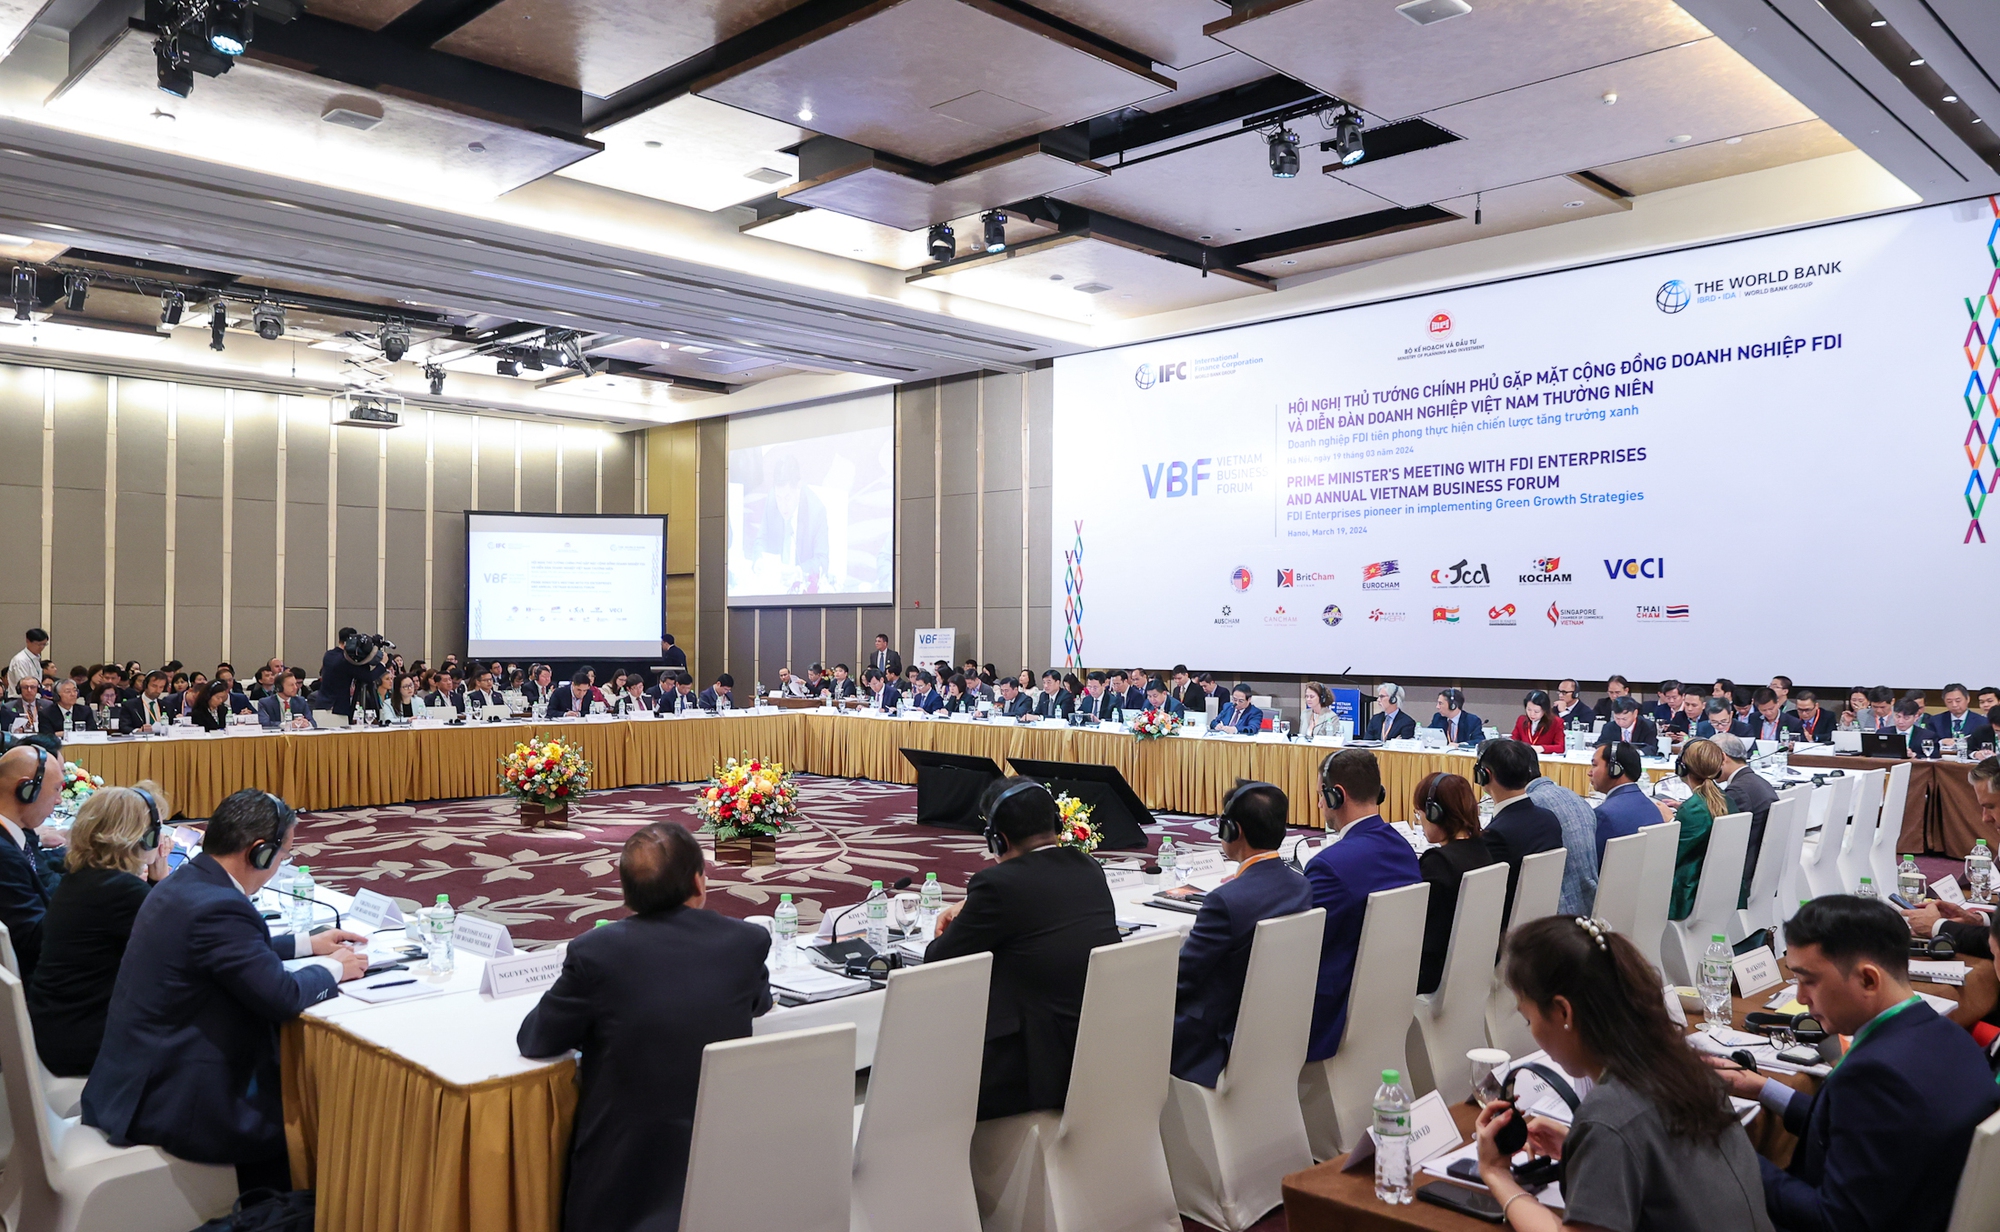 Diễn đàn Doanh nghiệp Việt Nam (VBF) thường niên với chủ đề "Doanh nghiệp FDI tiên phong thực hiện Chiến lược tăng trưởng xanh" - Ảnh: VGP/Nhật Bắc